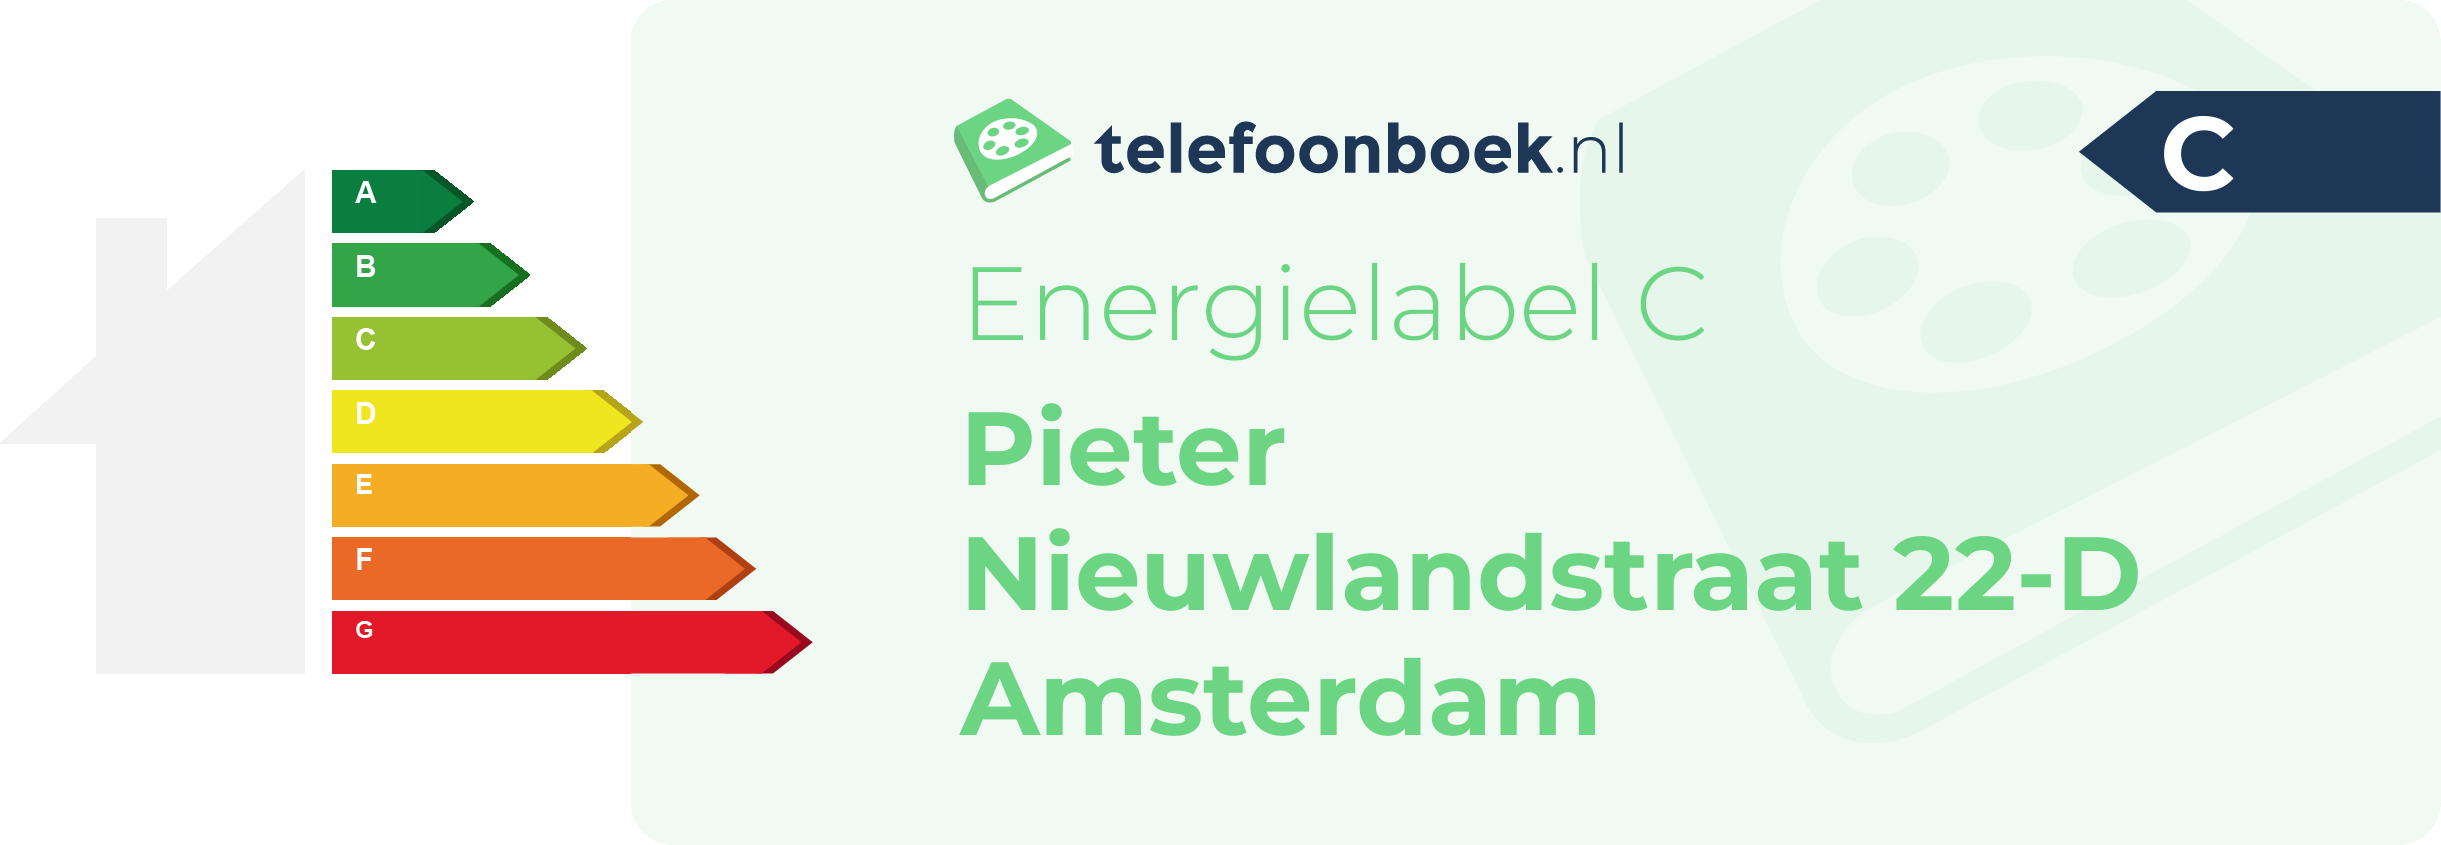 Energielabel Pieter Nieuwlandstraat 22-D Amsterdam